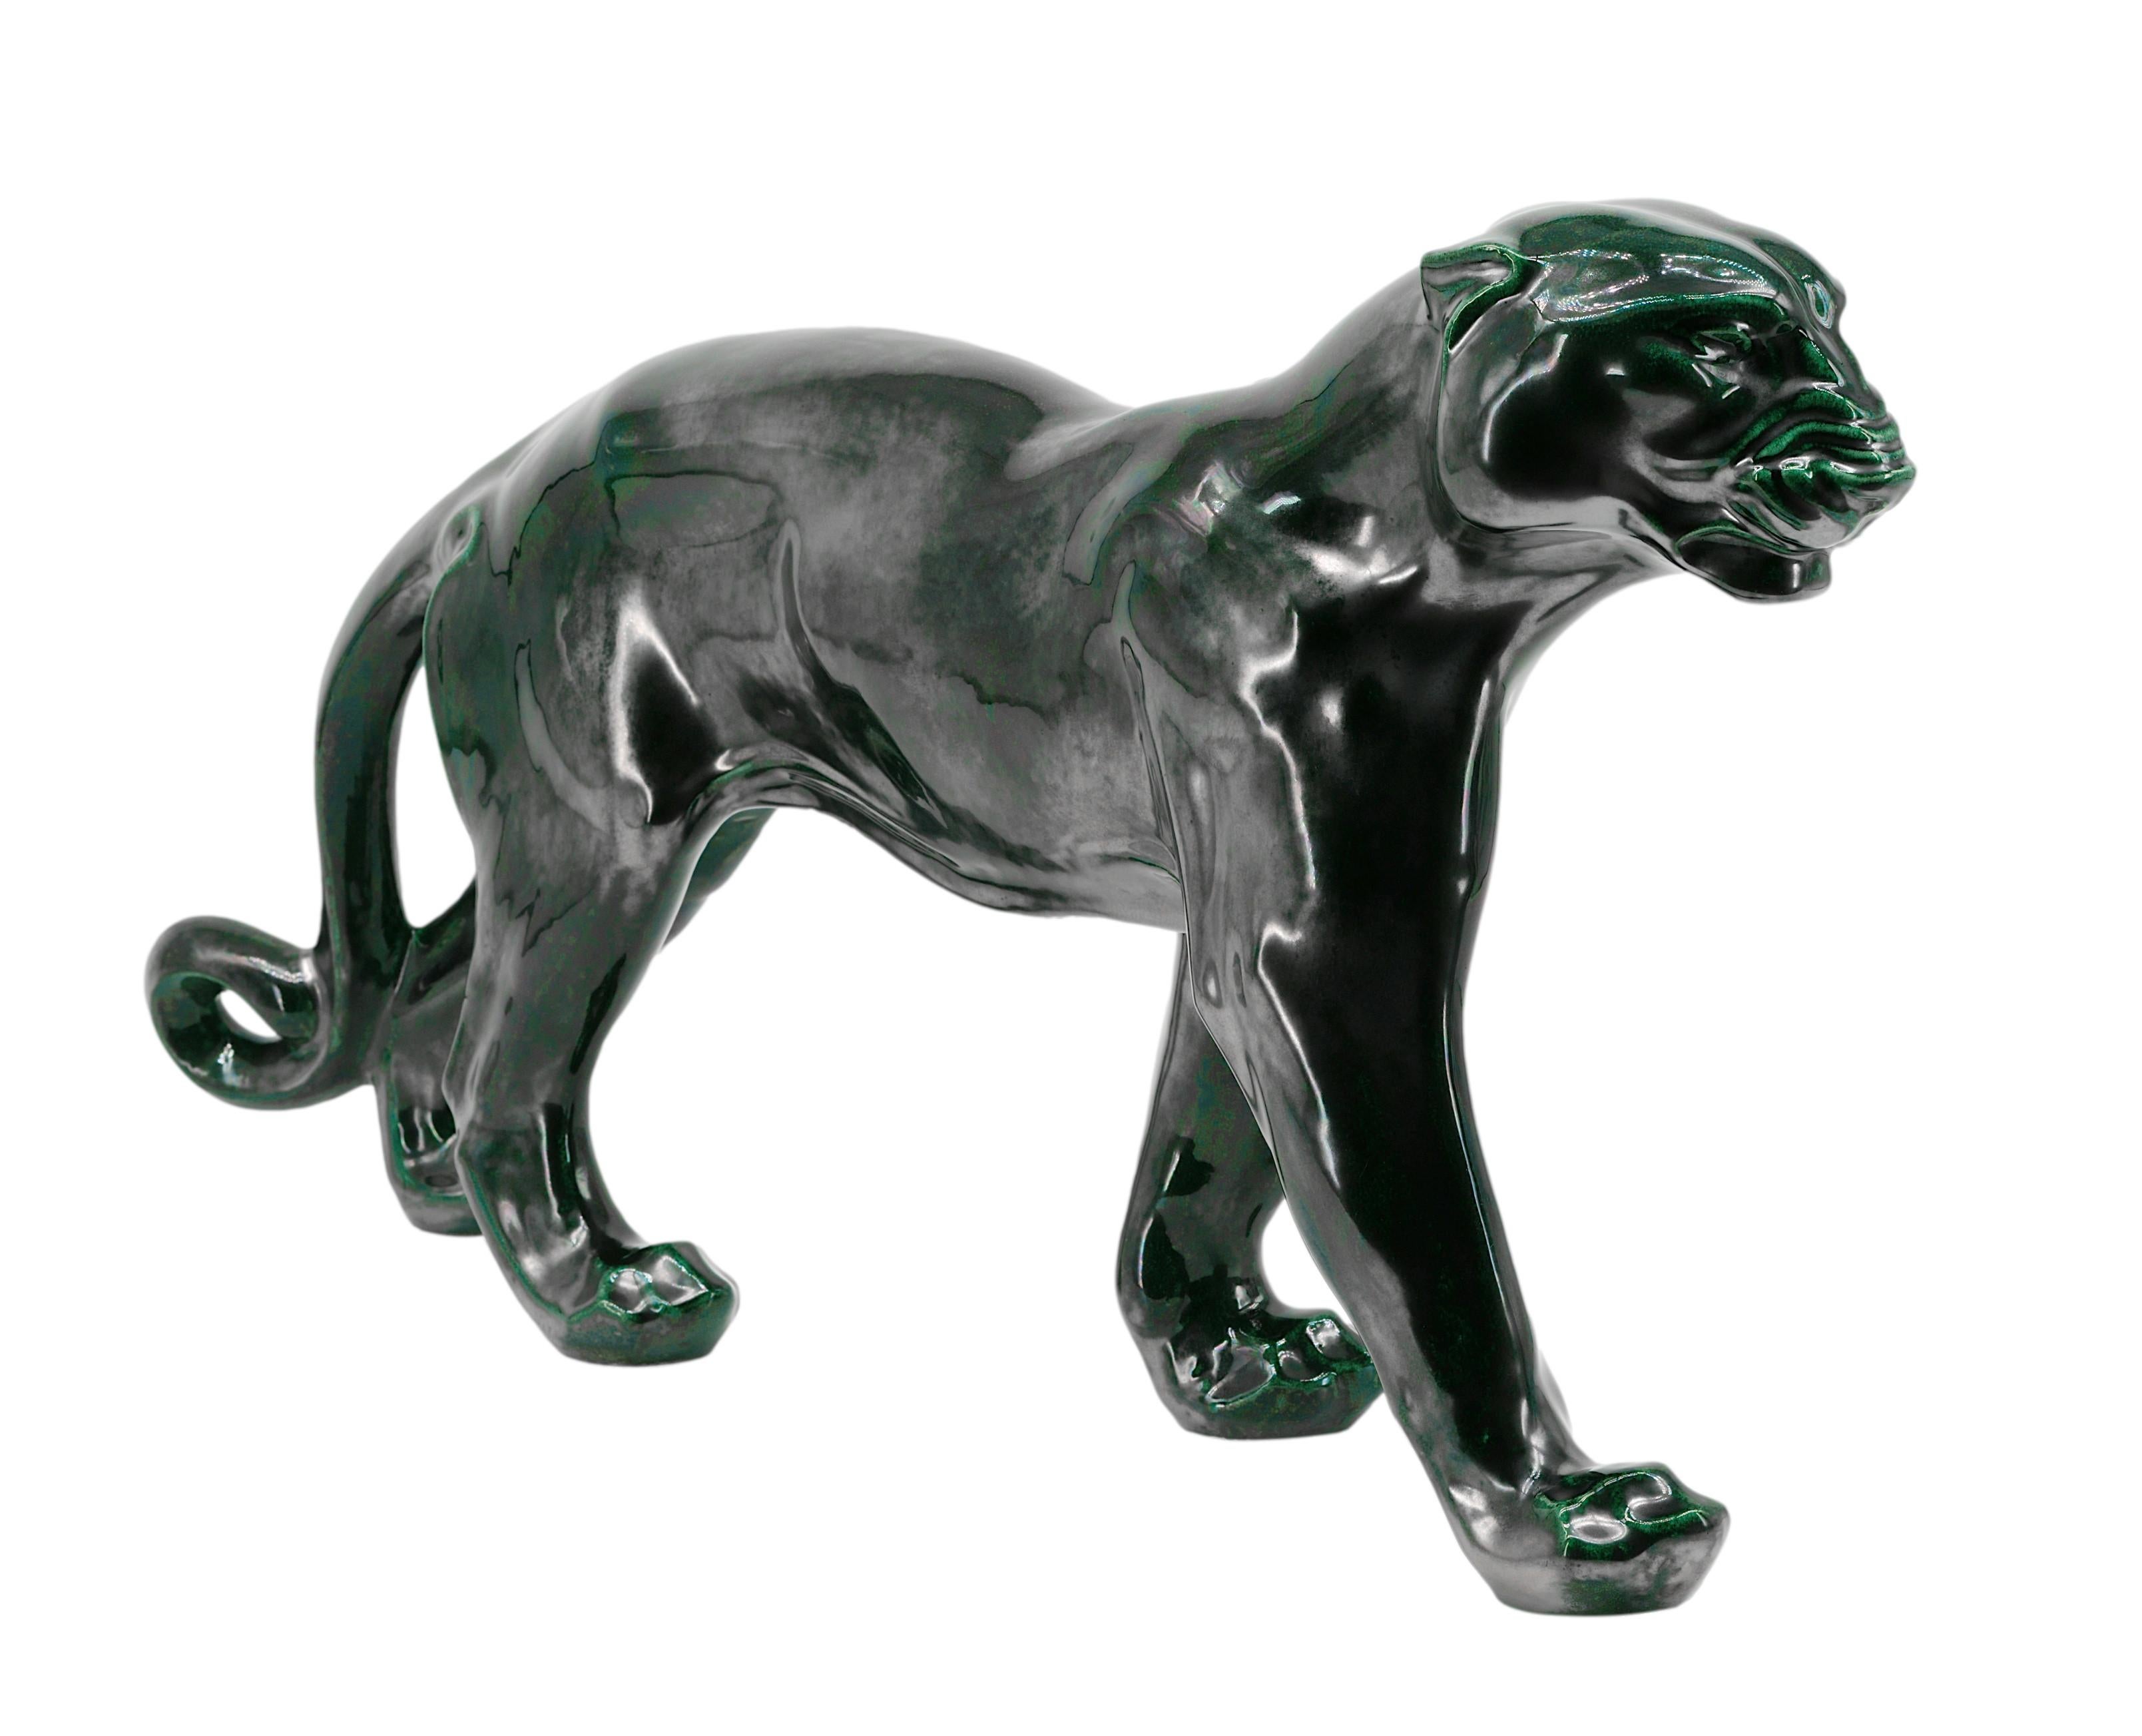 Santiago Rodriguez Bonome French Art Deco Ceramic Panther Sculpture, 1940s For Sale 5